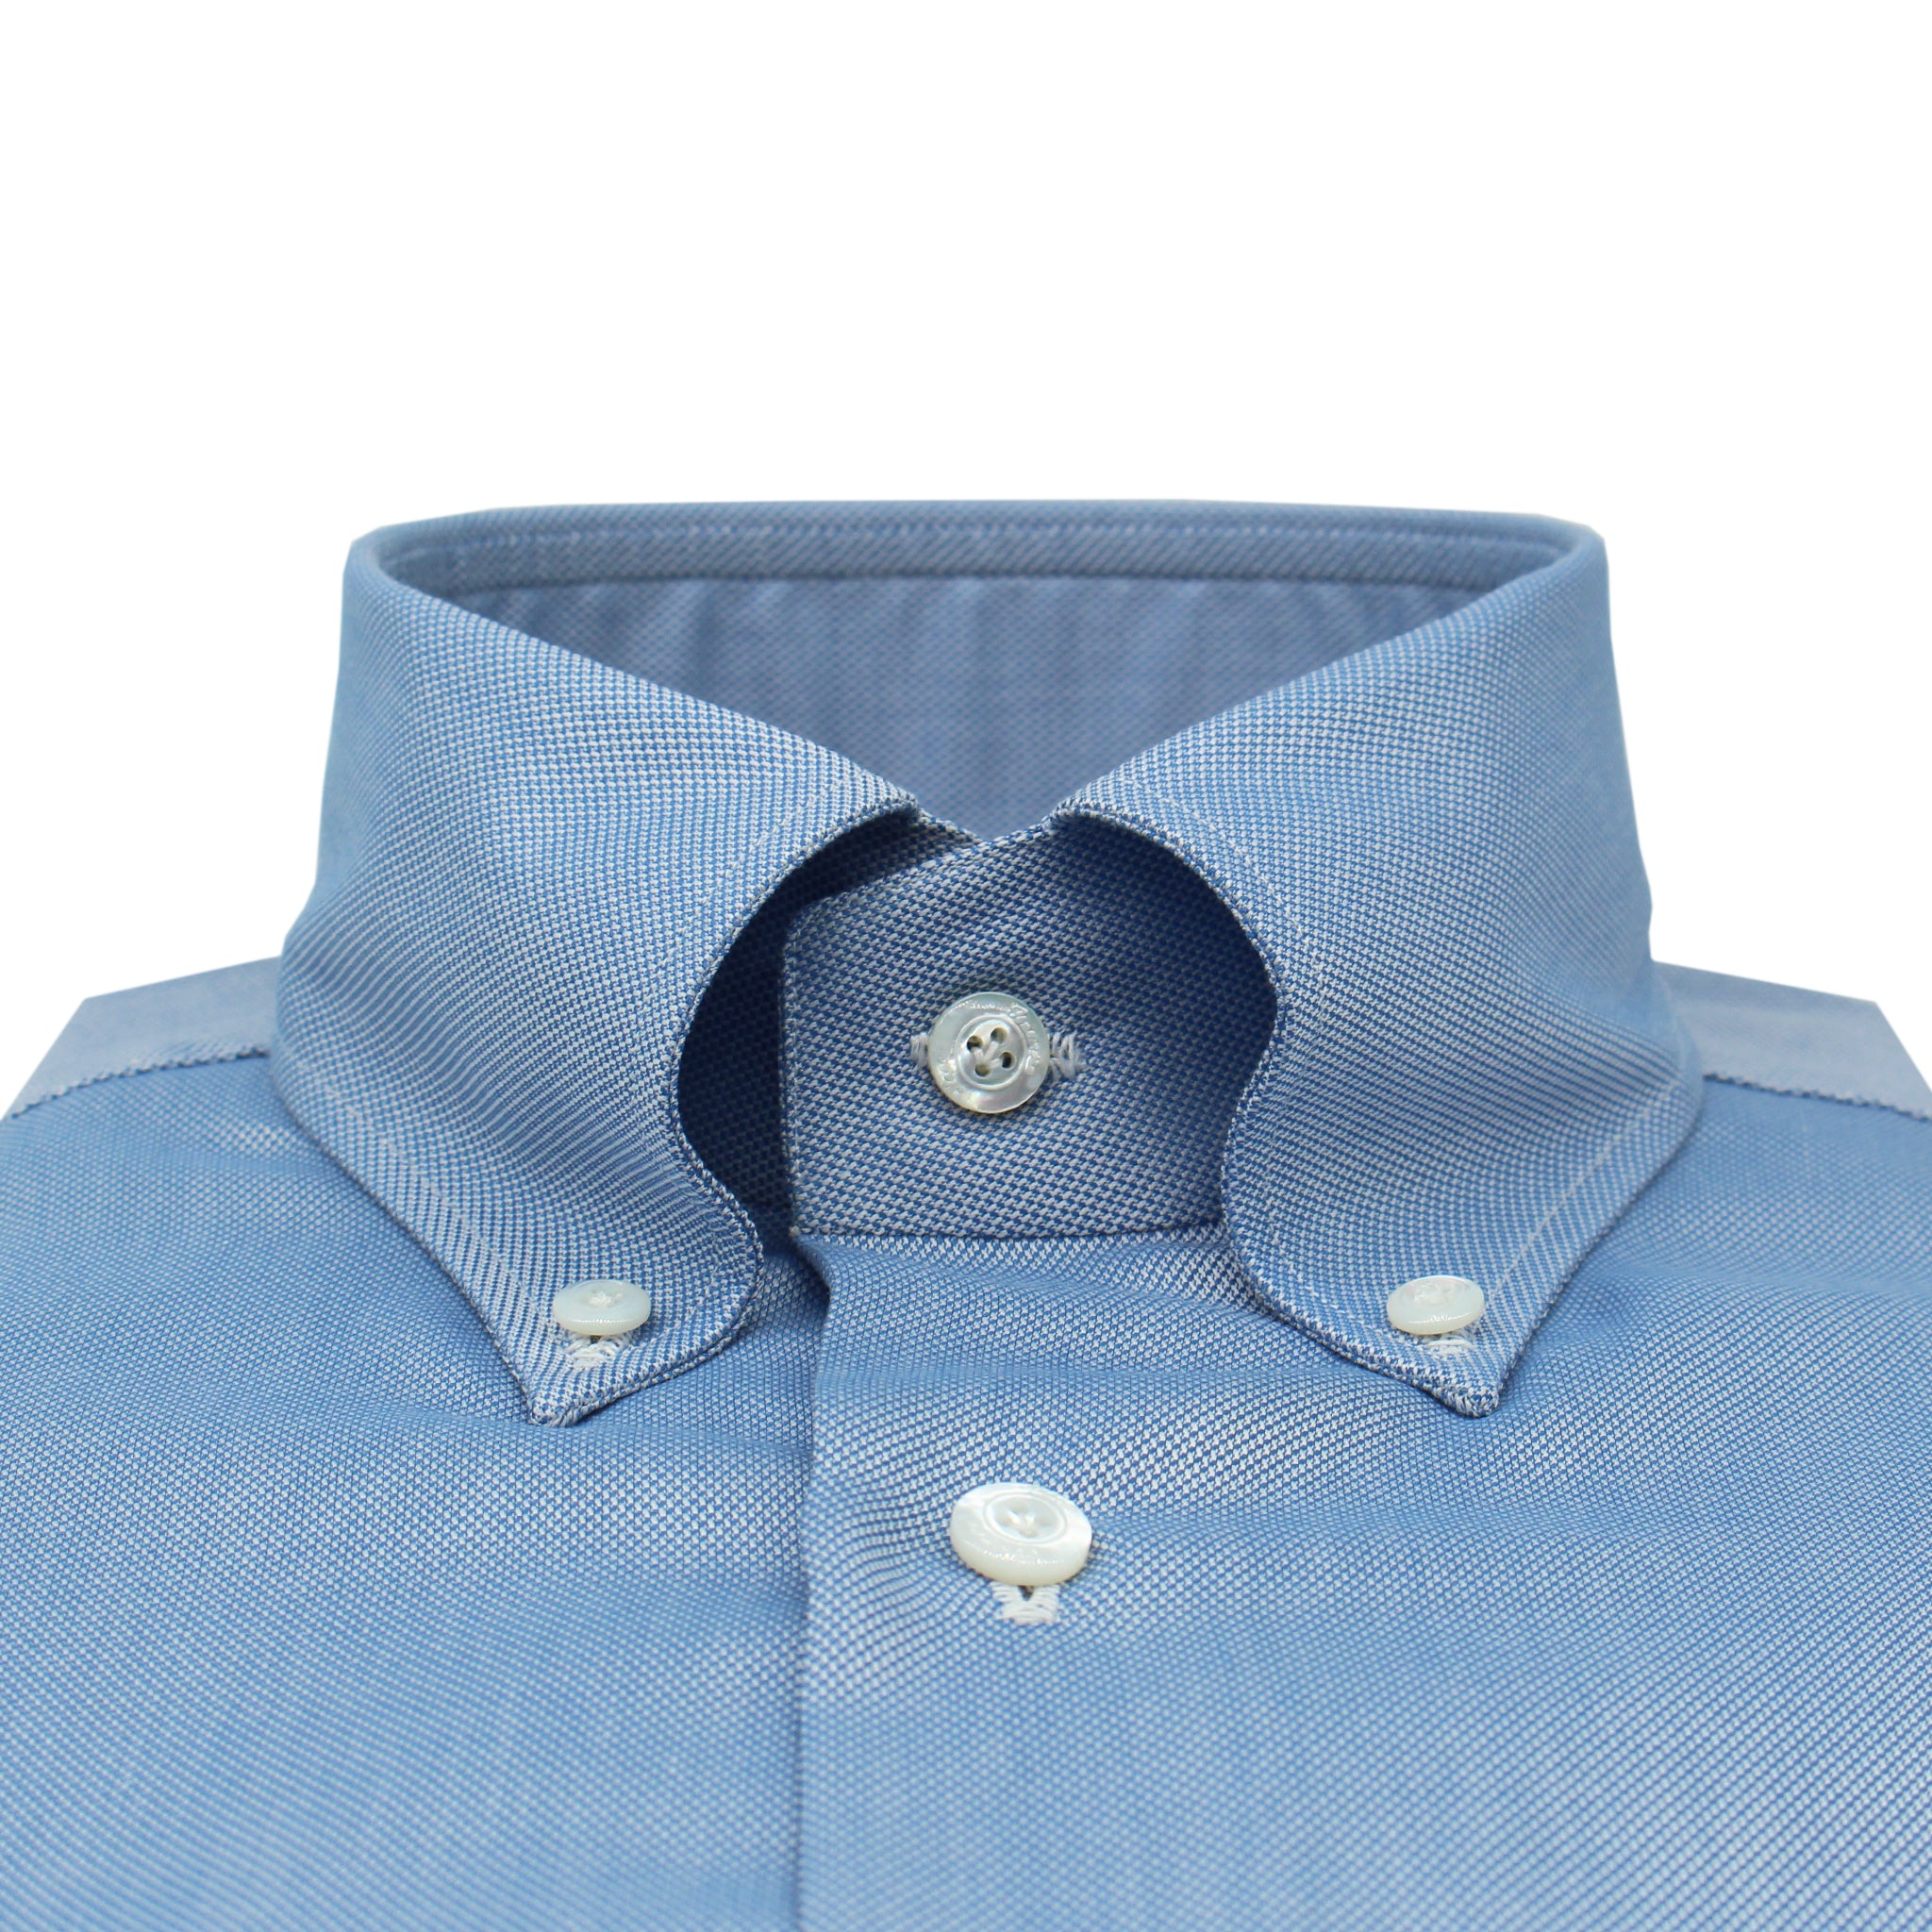 Camicia classica Napoli regular fit, cotone oxford blu, collo button down